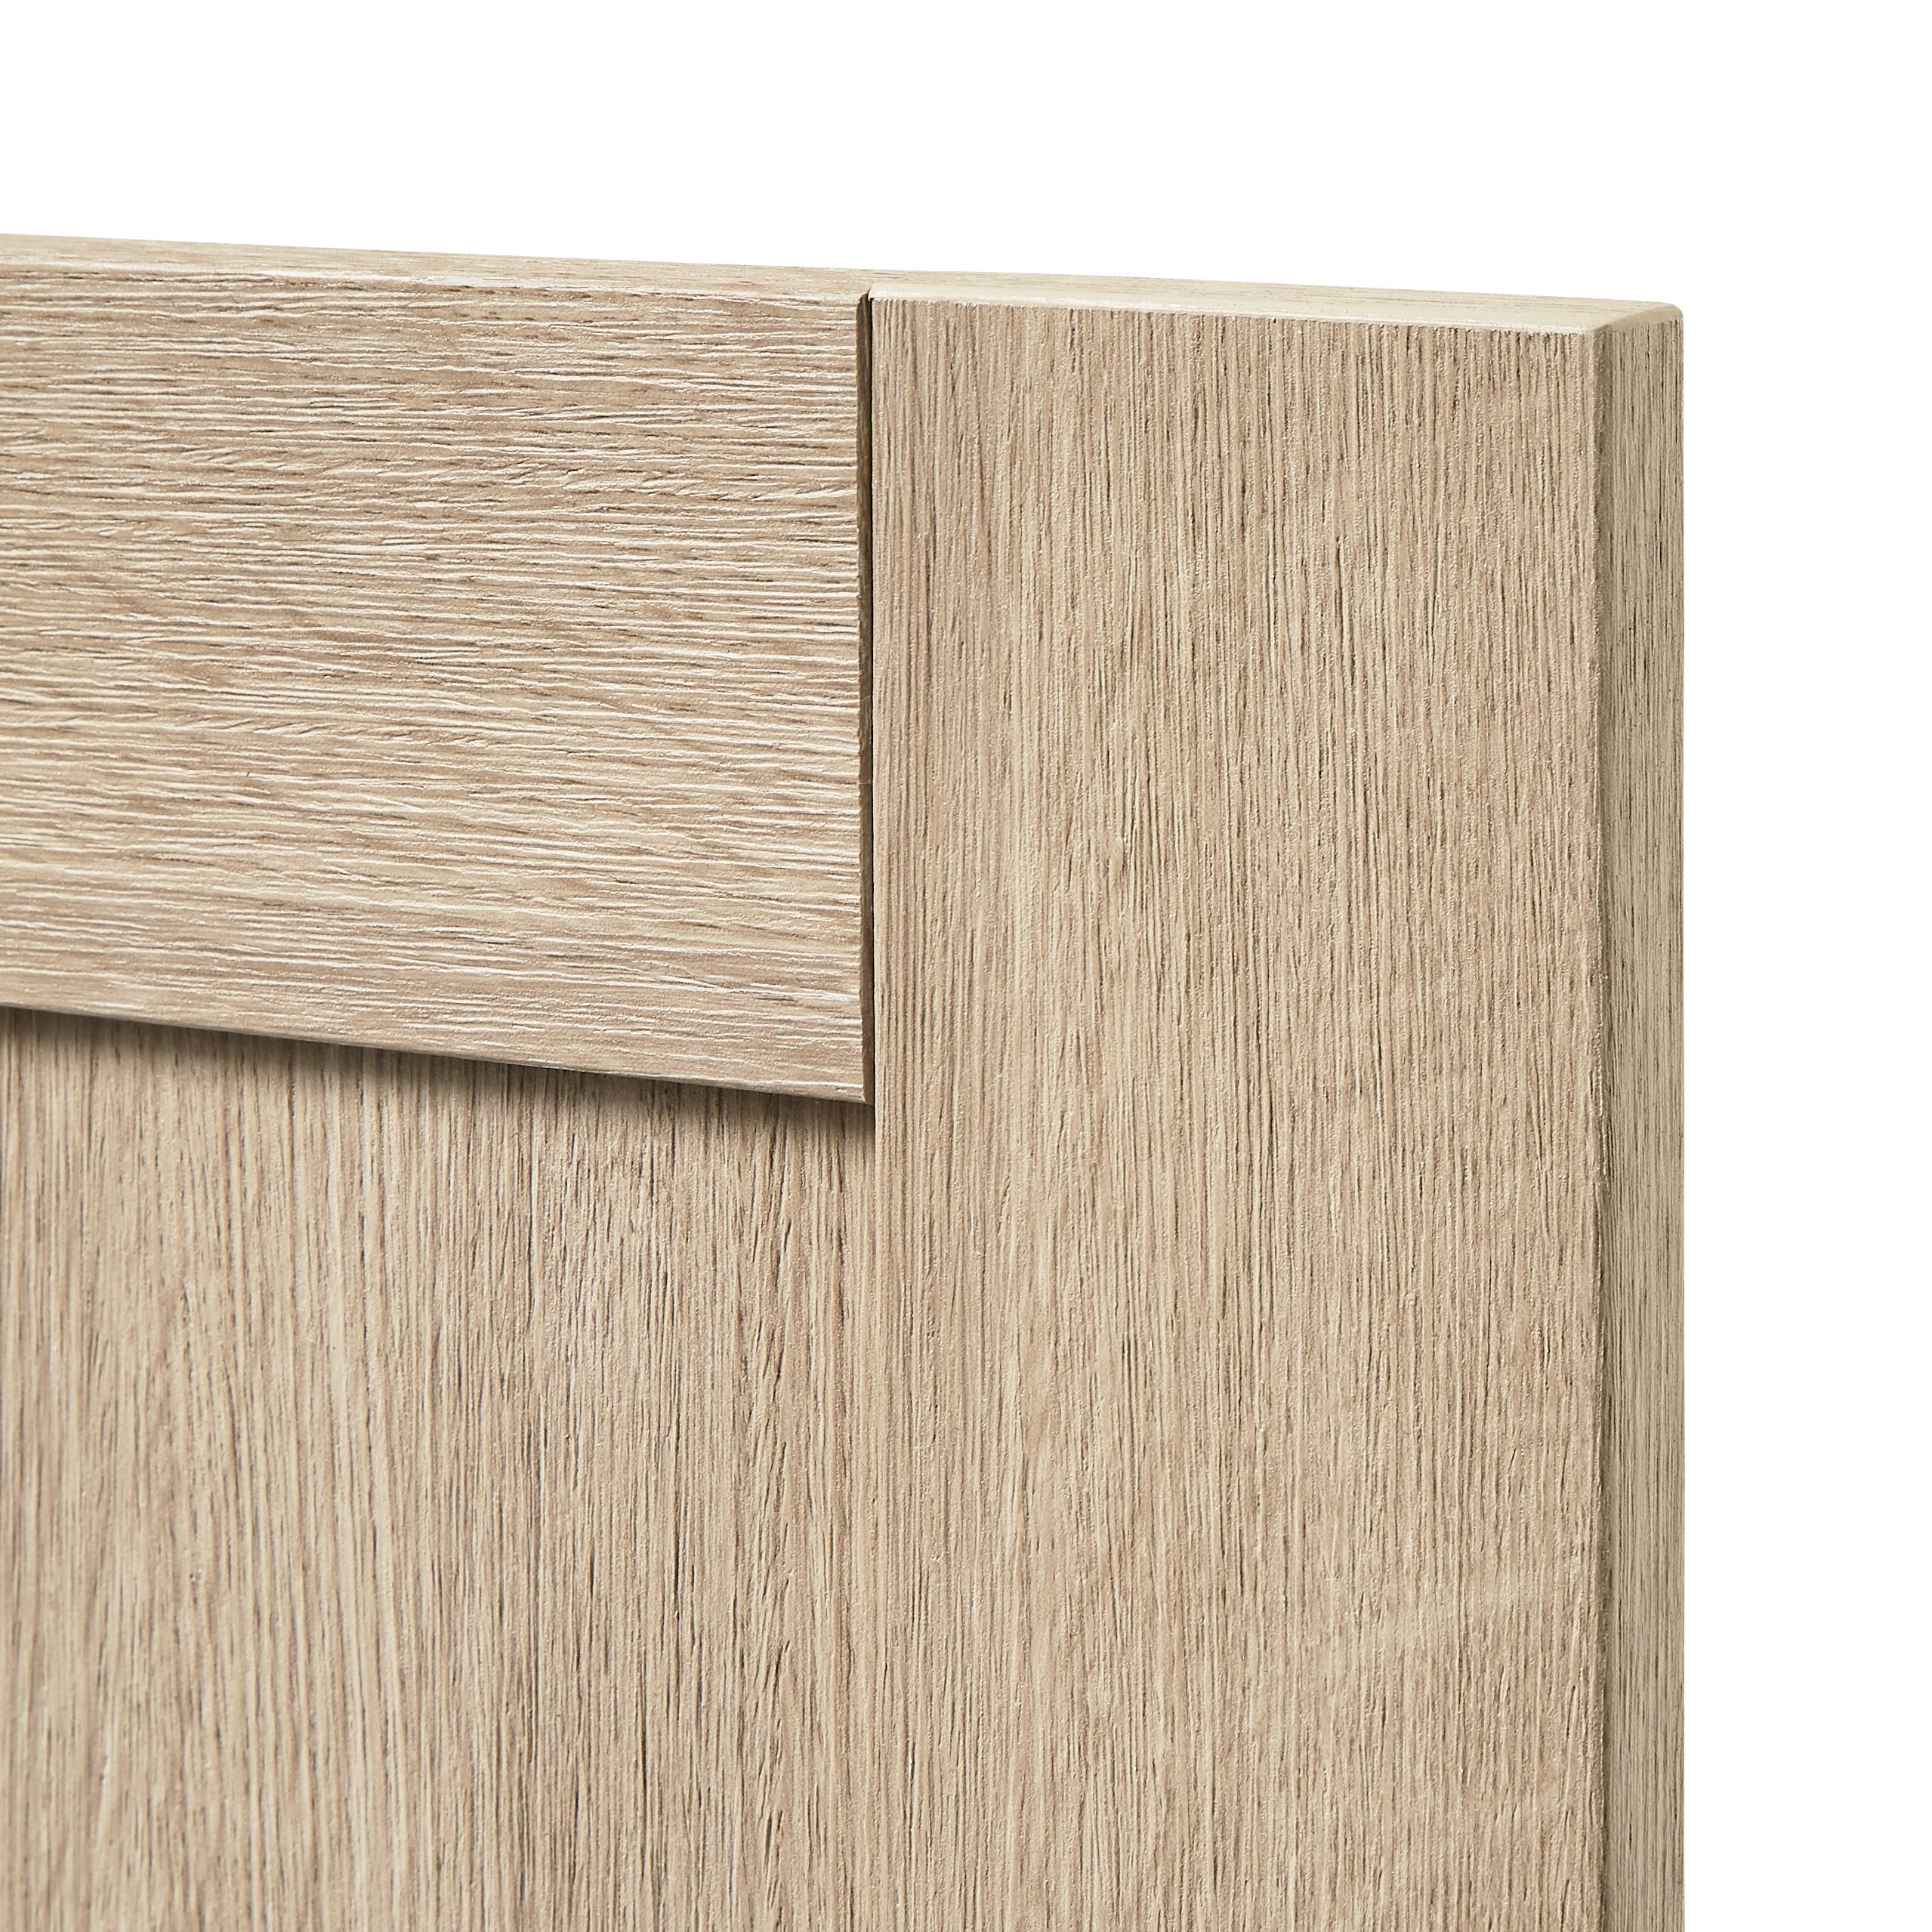 GoodHome Alpinia Oak effect shaker Highline Cabinet door (W)300mm (H)715mm (T)18mm